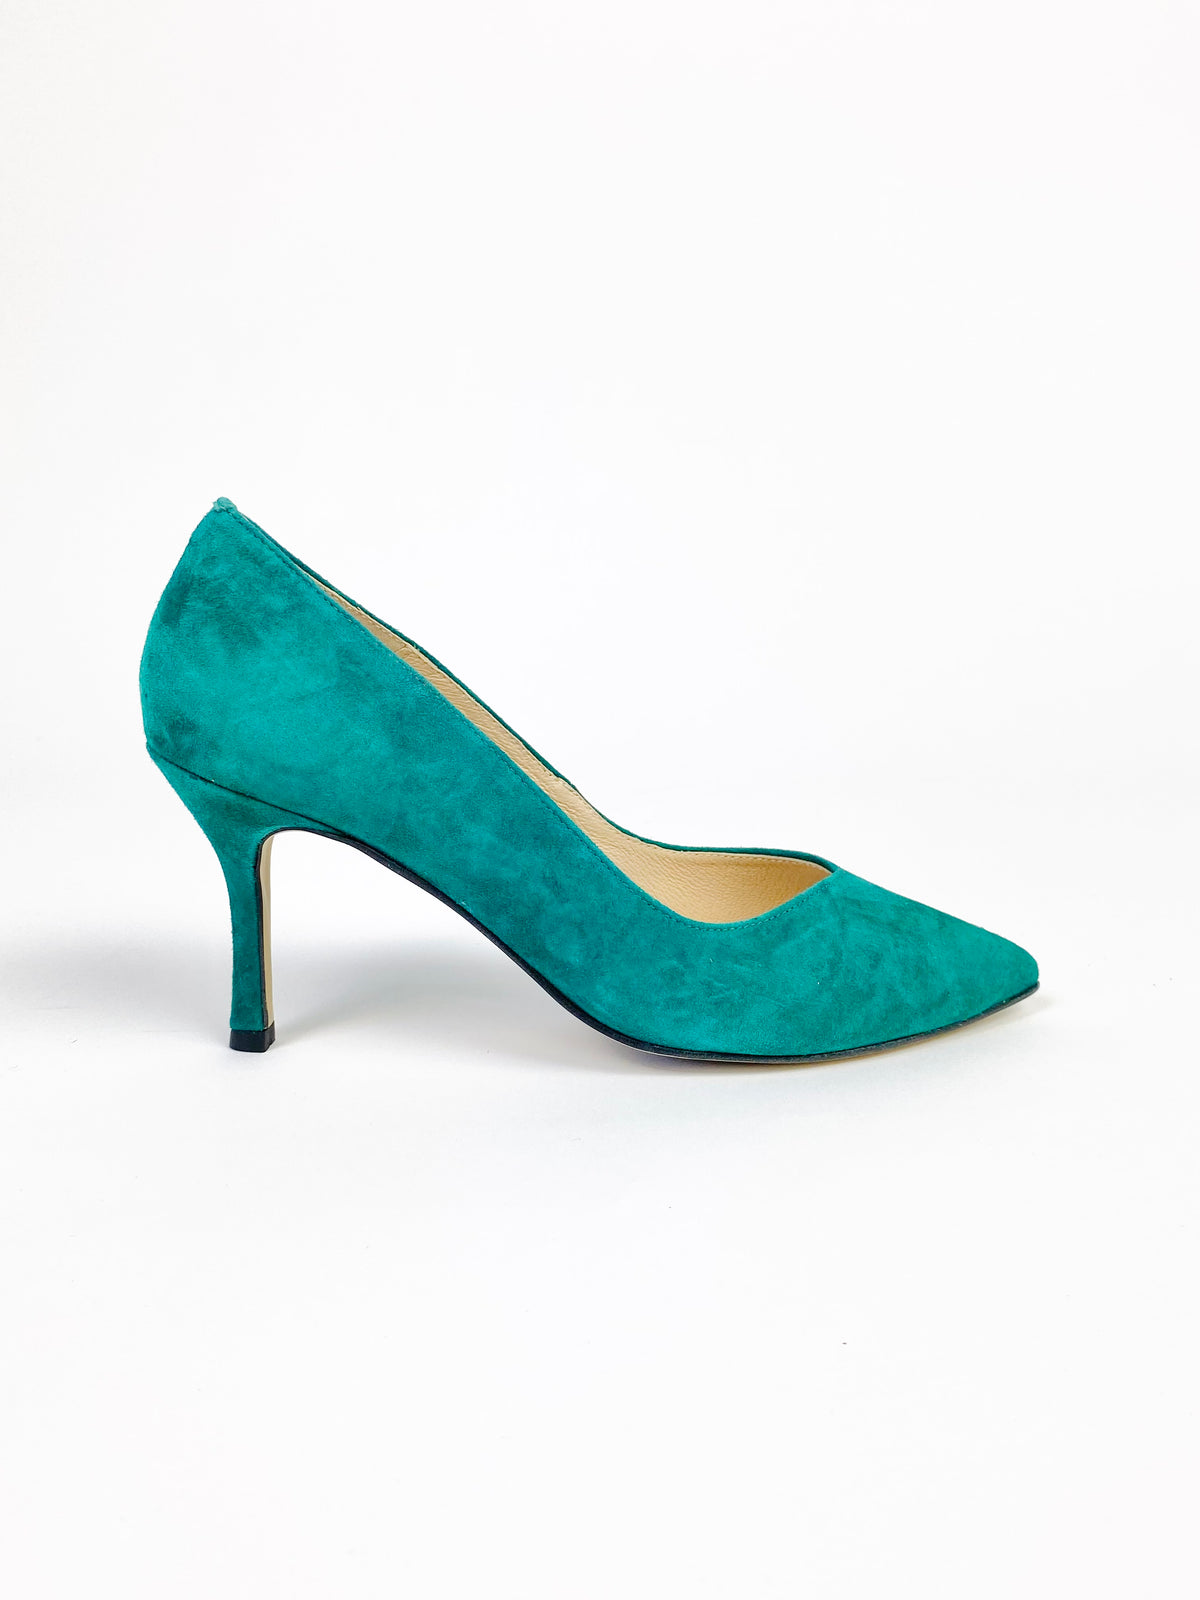 Rachels - Green Suede Court Shoe